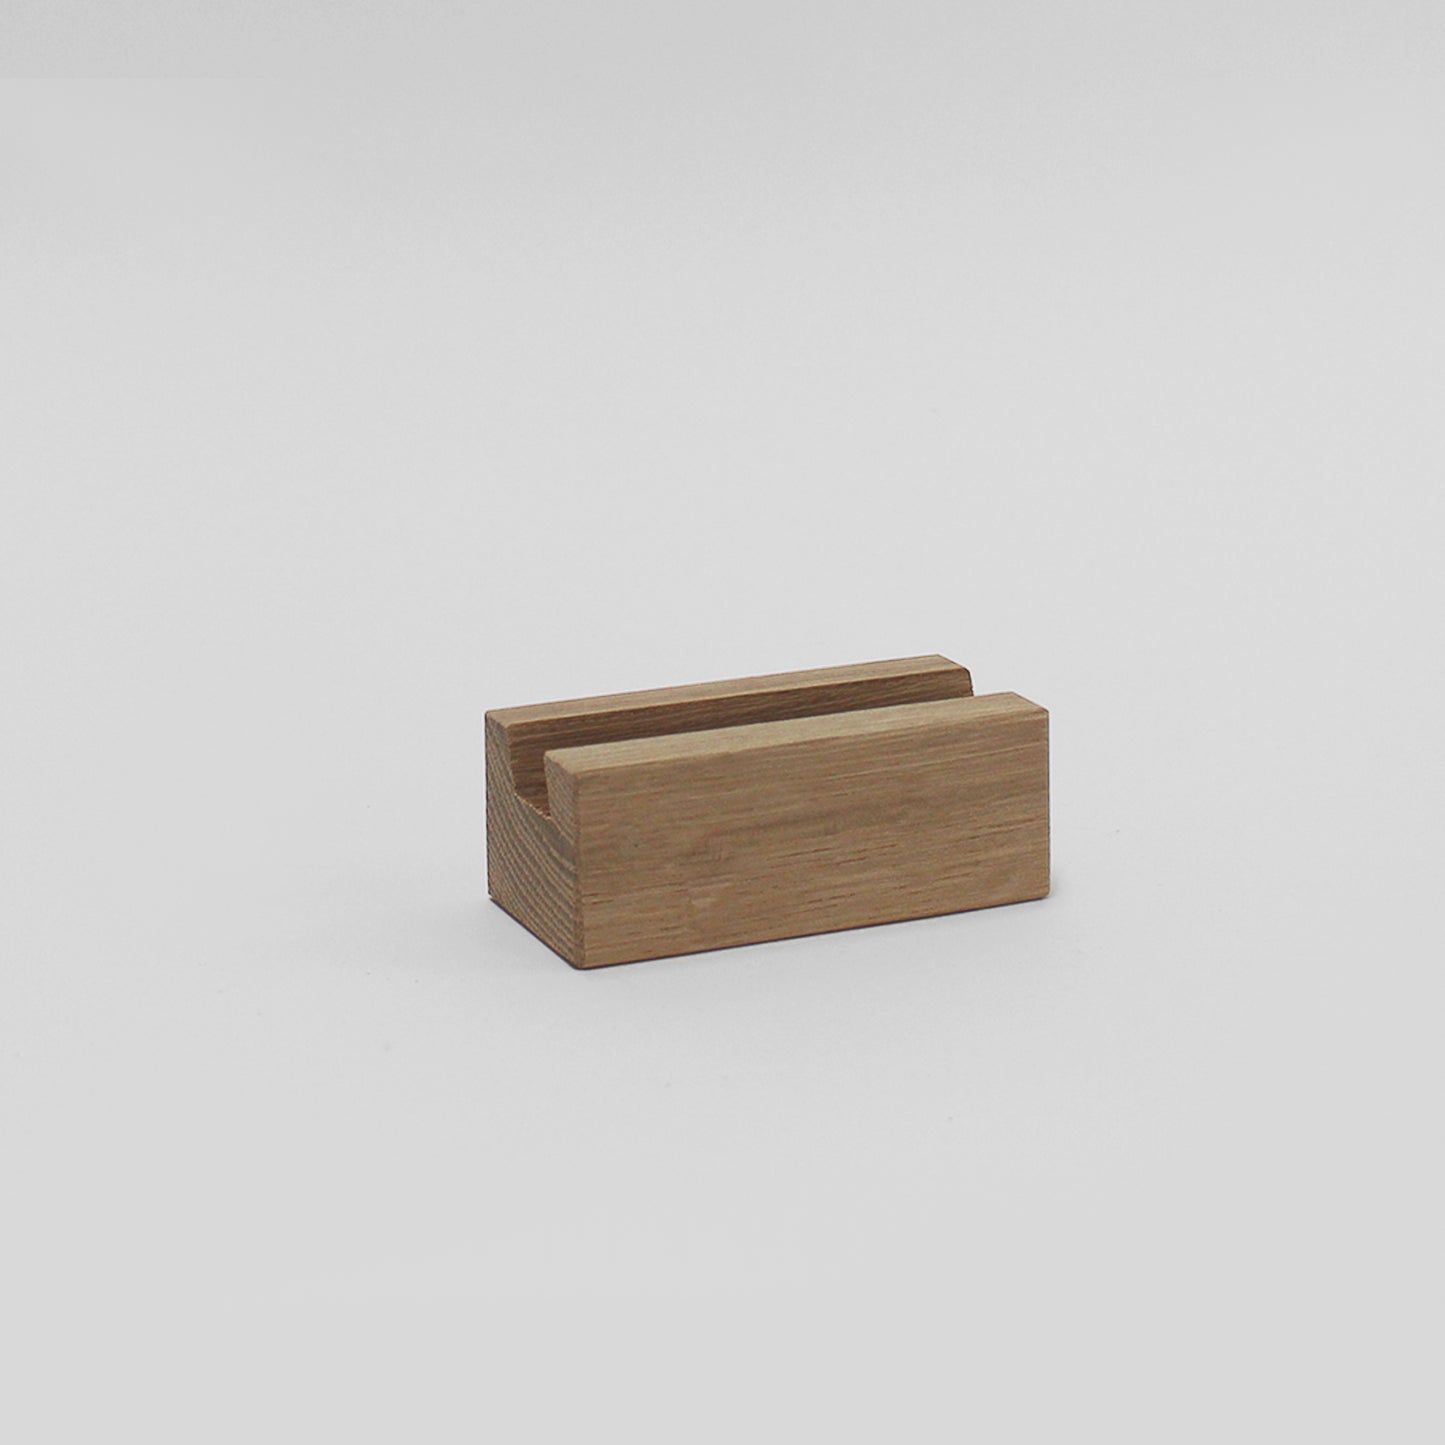 Wooden Business Card Holder - Solid Oak